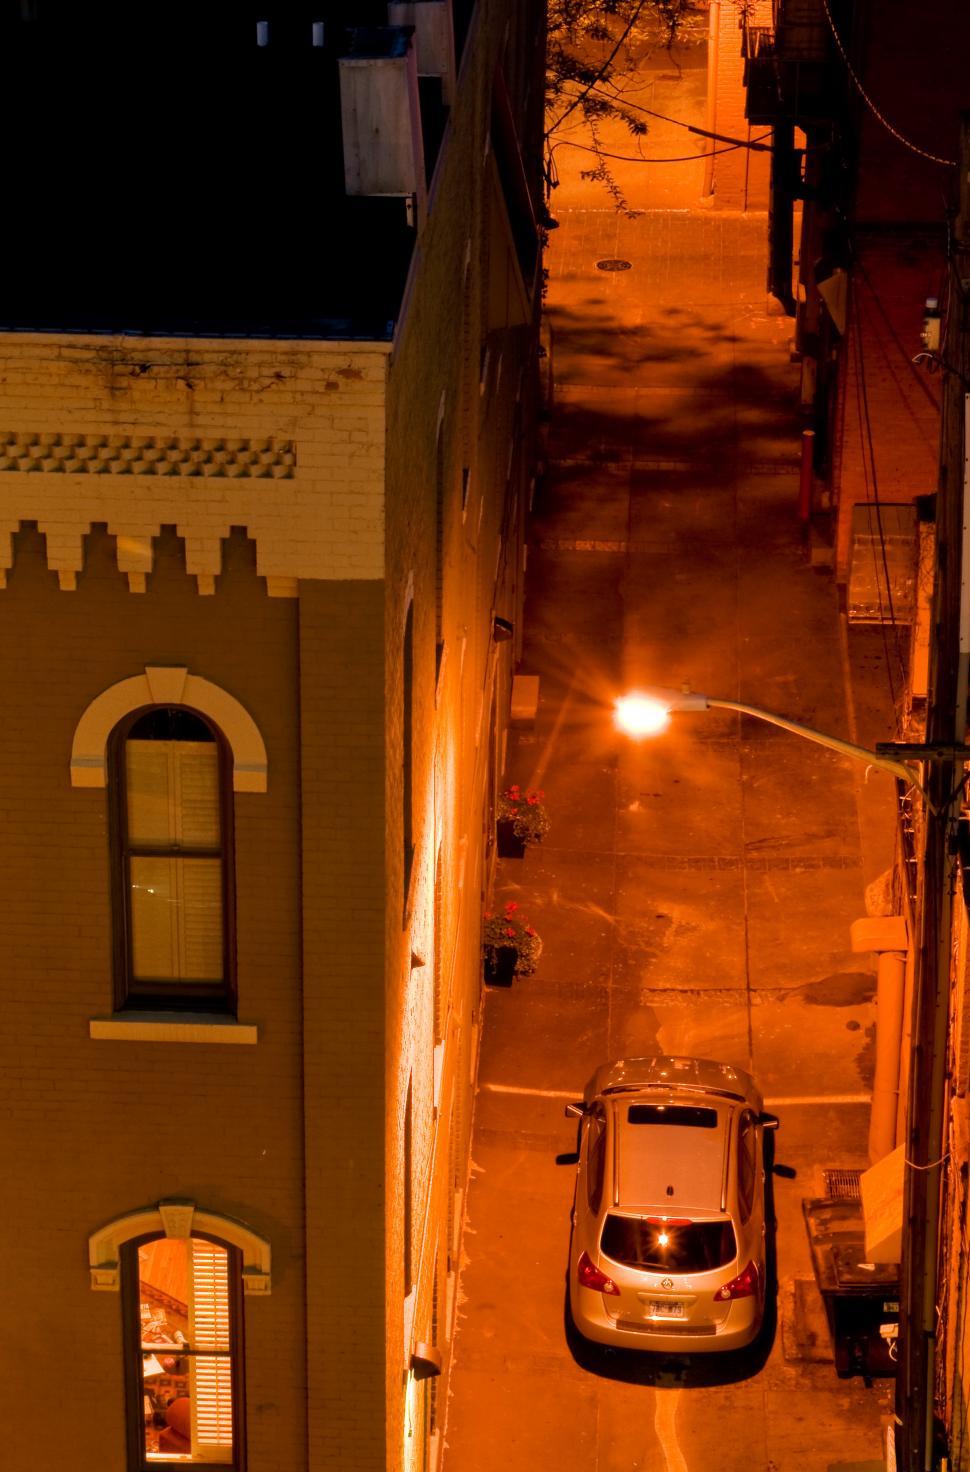 Free Image of street at night 